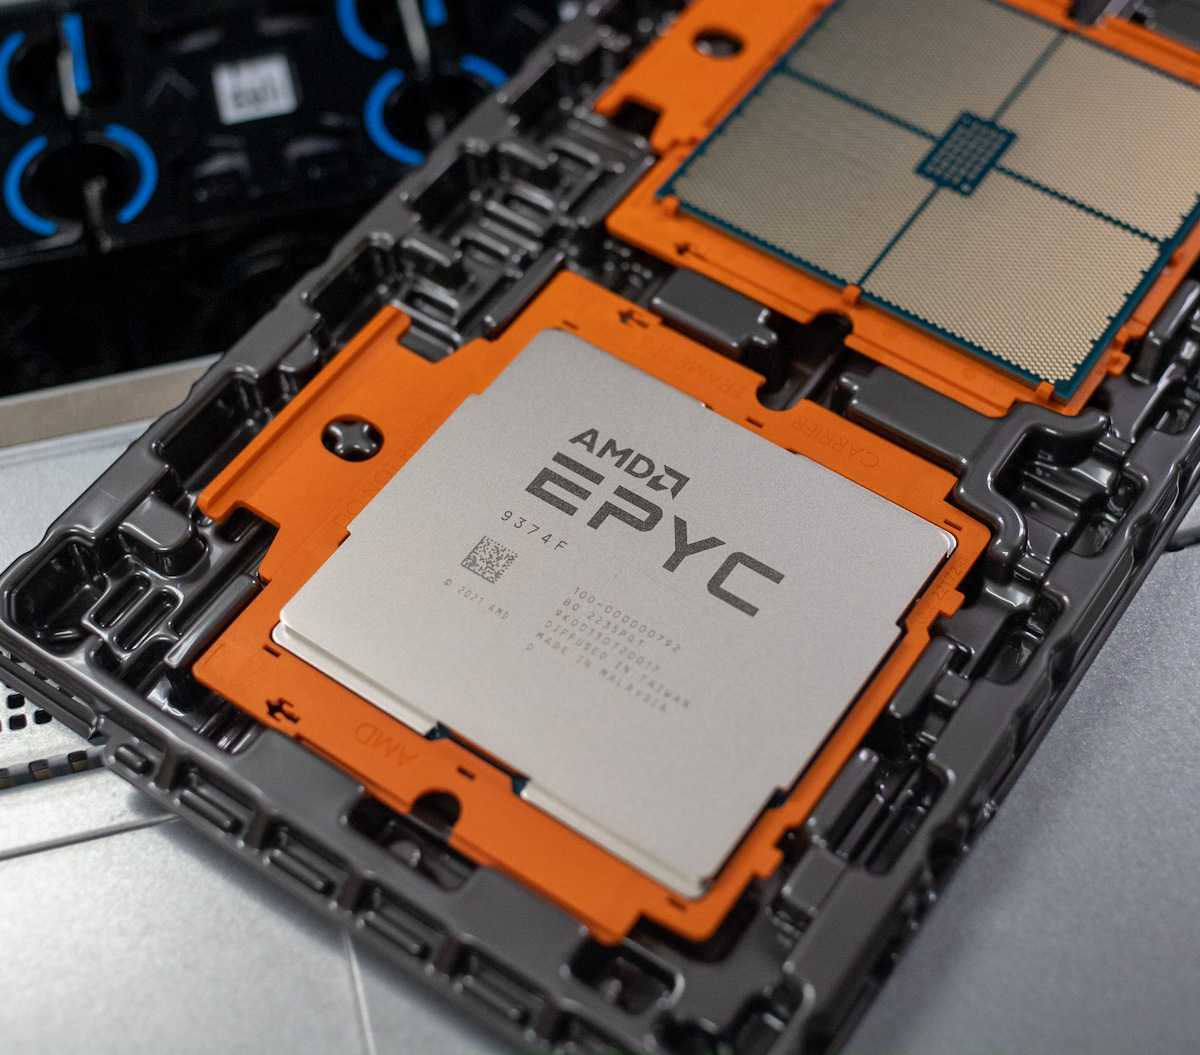 Đánh giá AMD EPYC thế hệ thứ 4 (AMD Genoa)